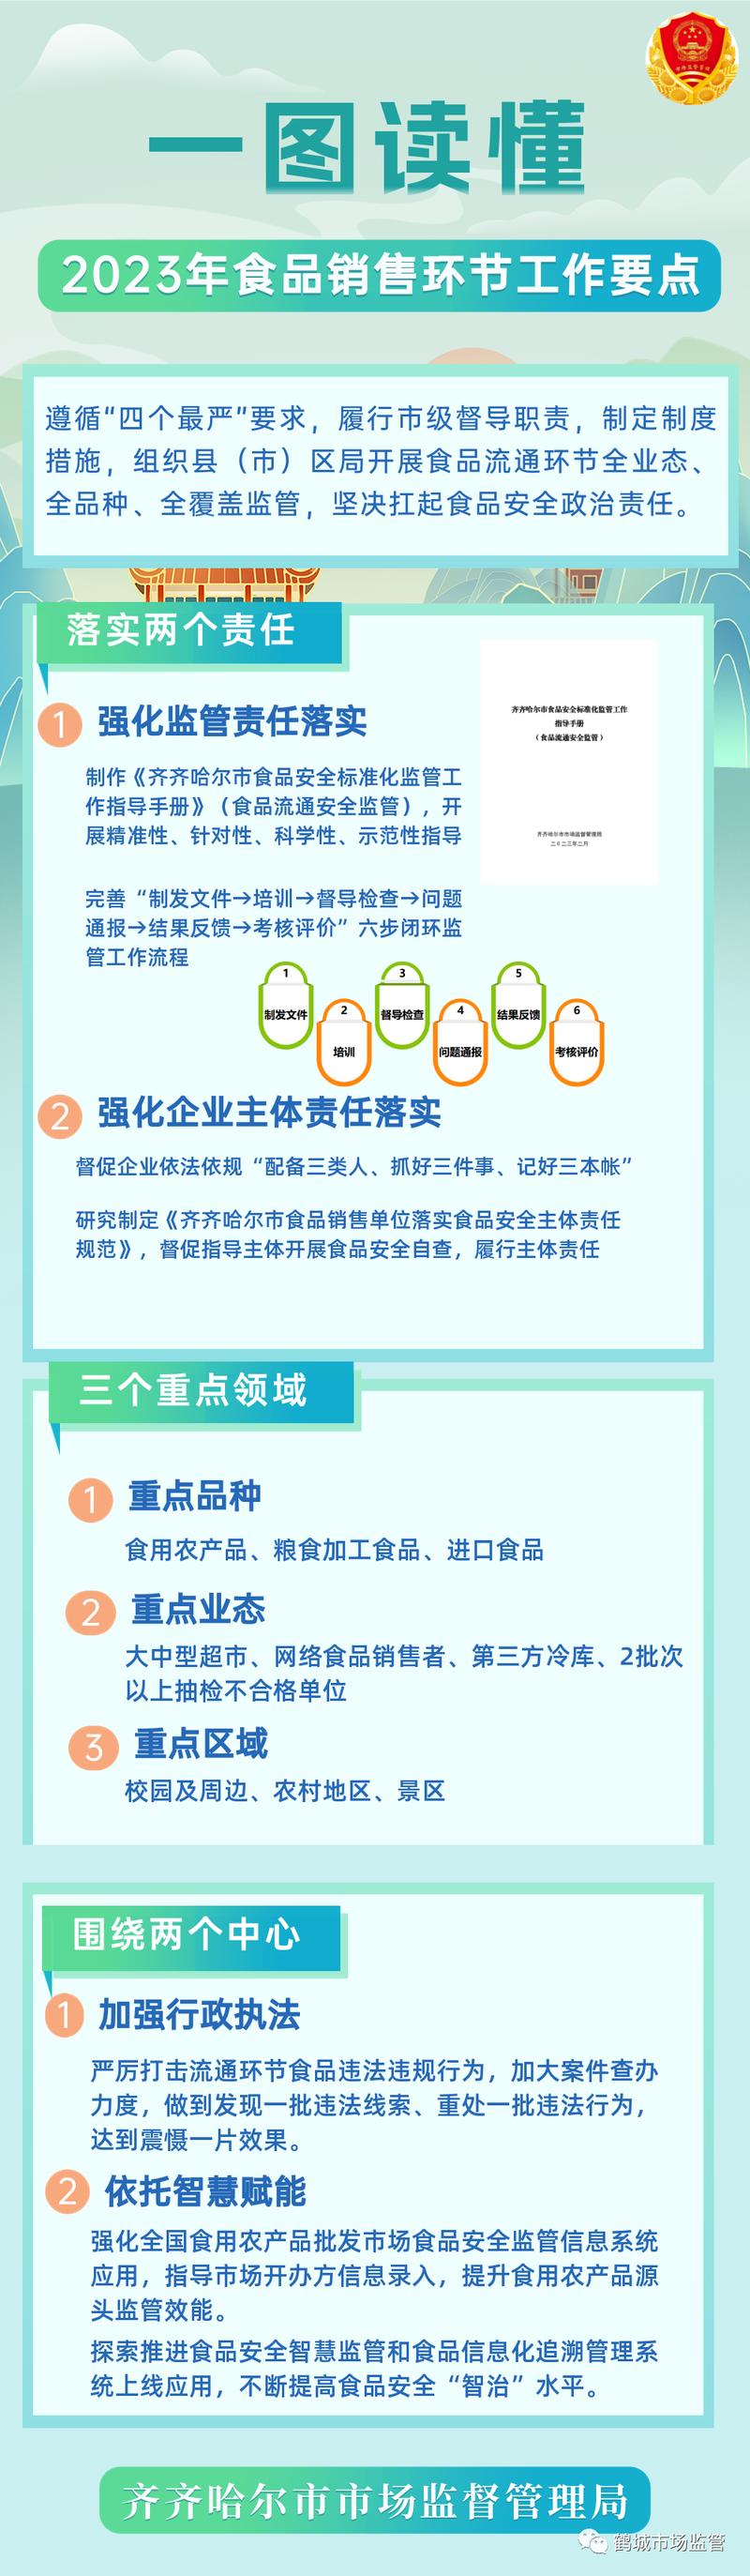 一图读懂|黑龙江省齐齐哈尔市2023年食品销售环节工作要点